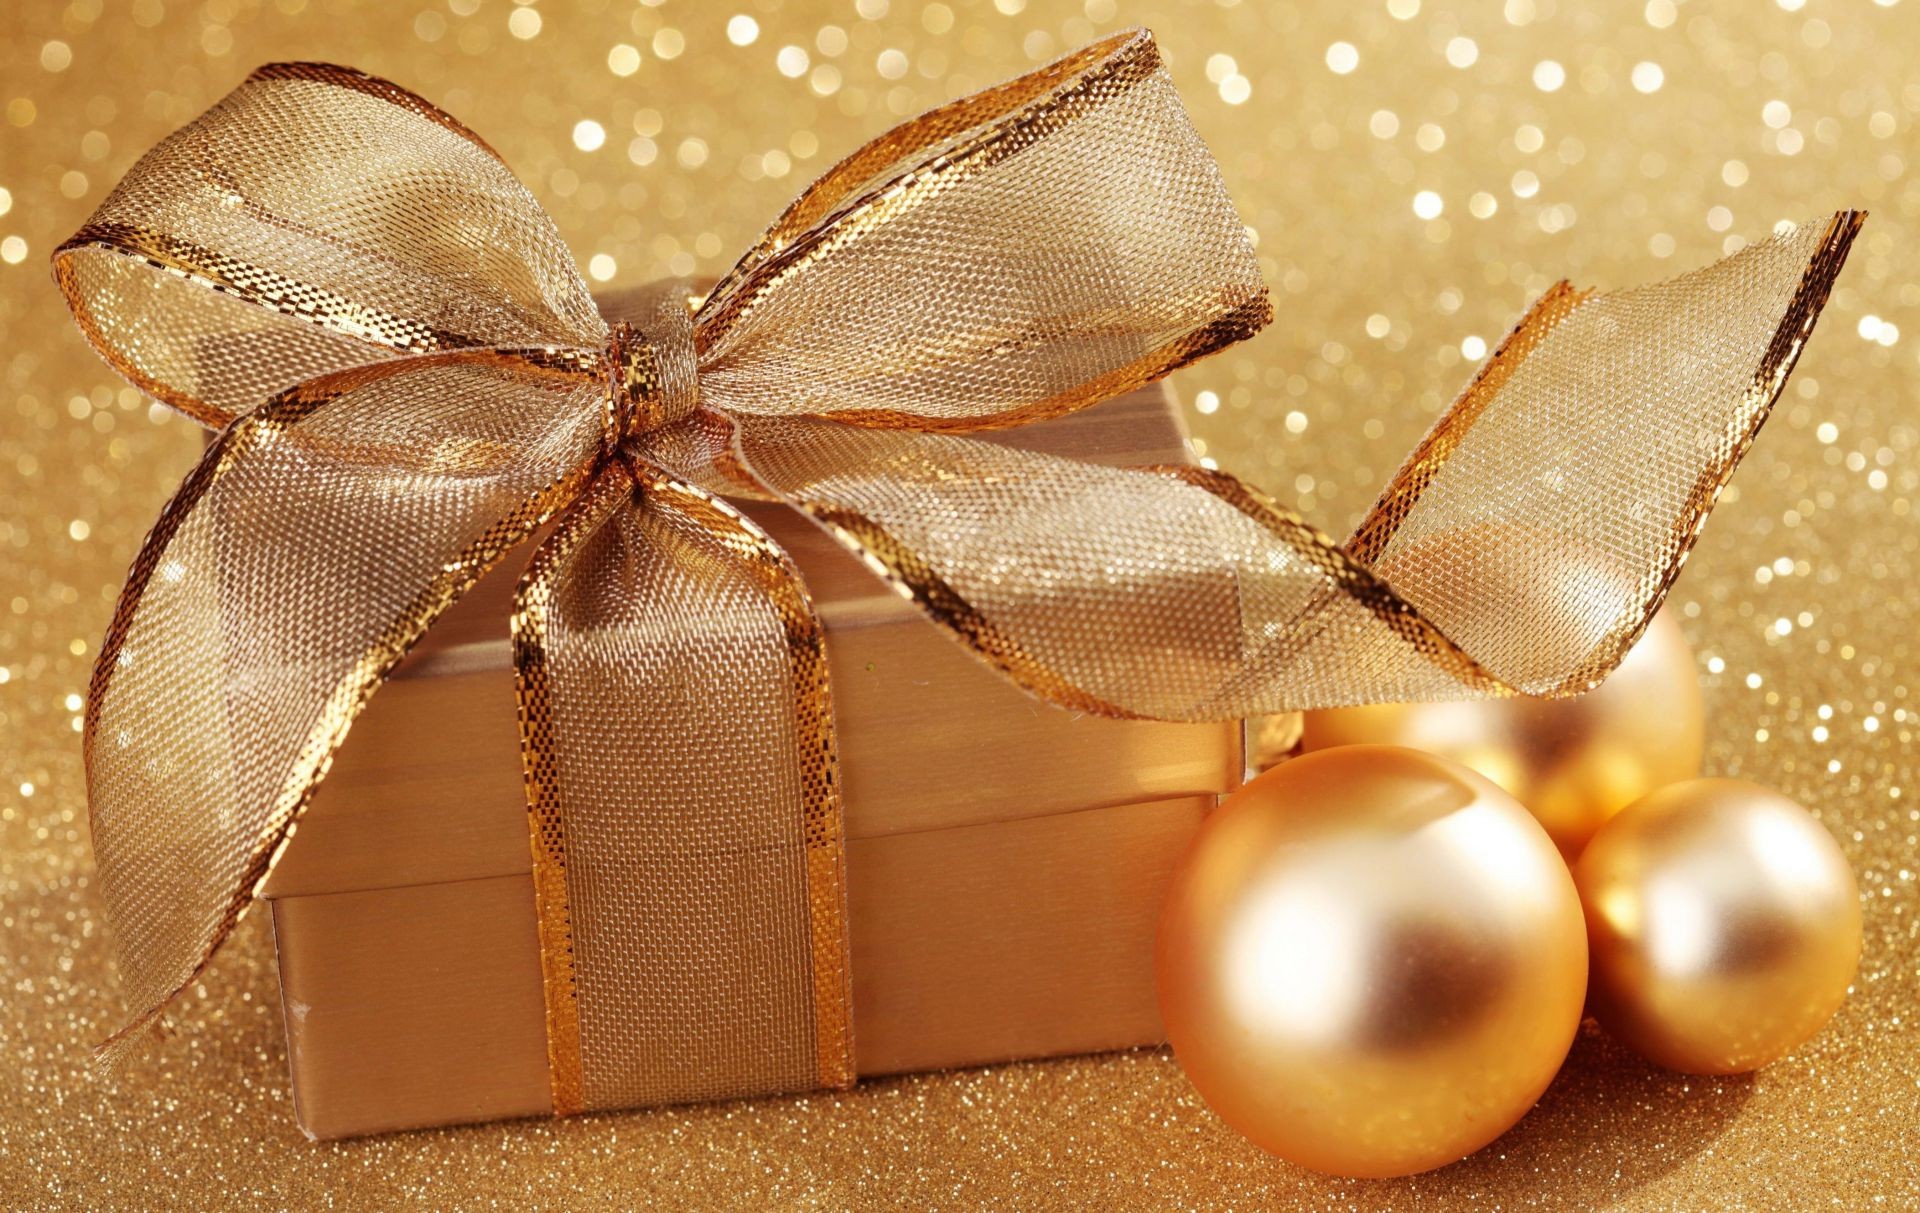 новый год рождество лук нить светит подарок зима праздник коробка украшения мяч золото блестят сюрприз витиеватый день рождения юбилей сатин обертывание отпуск